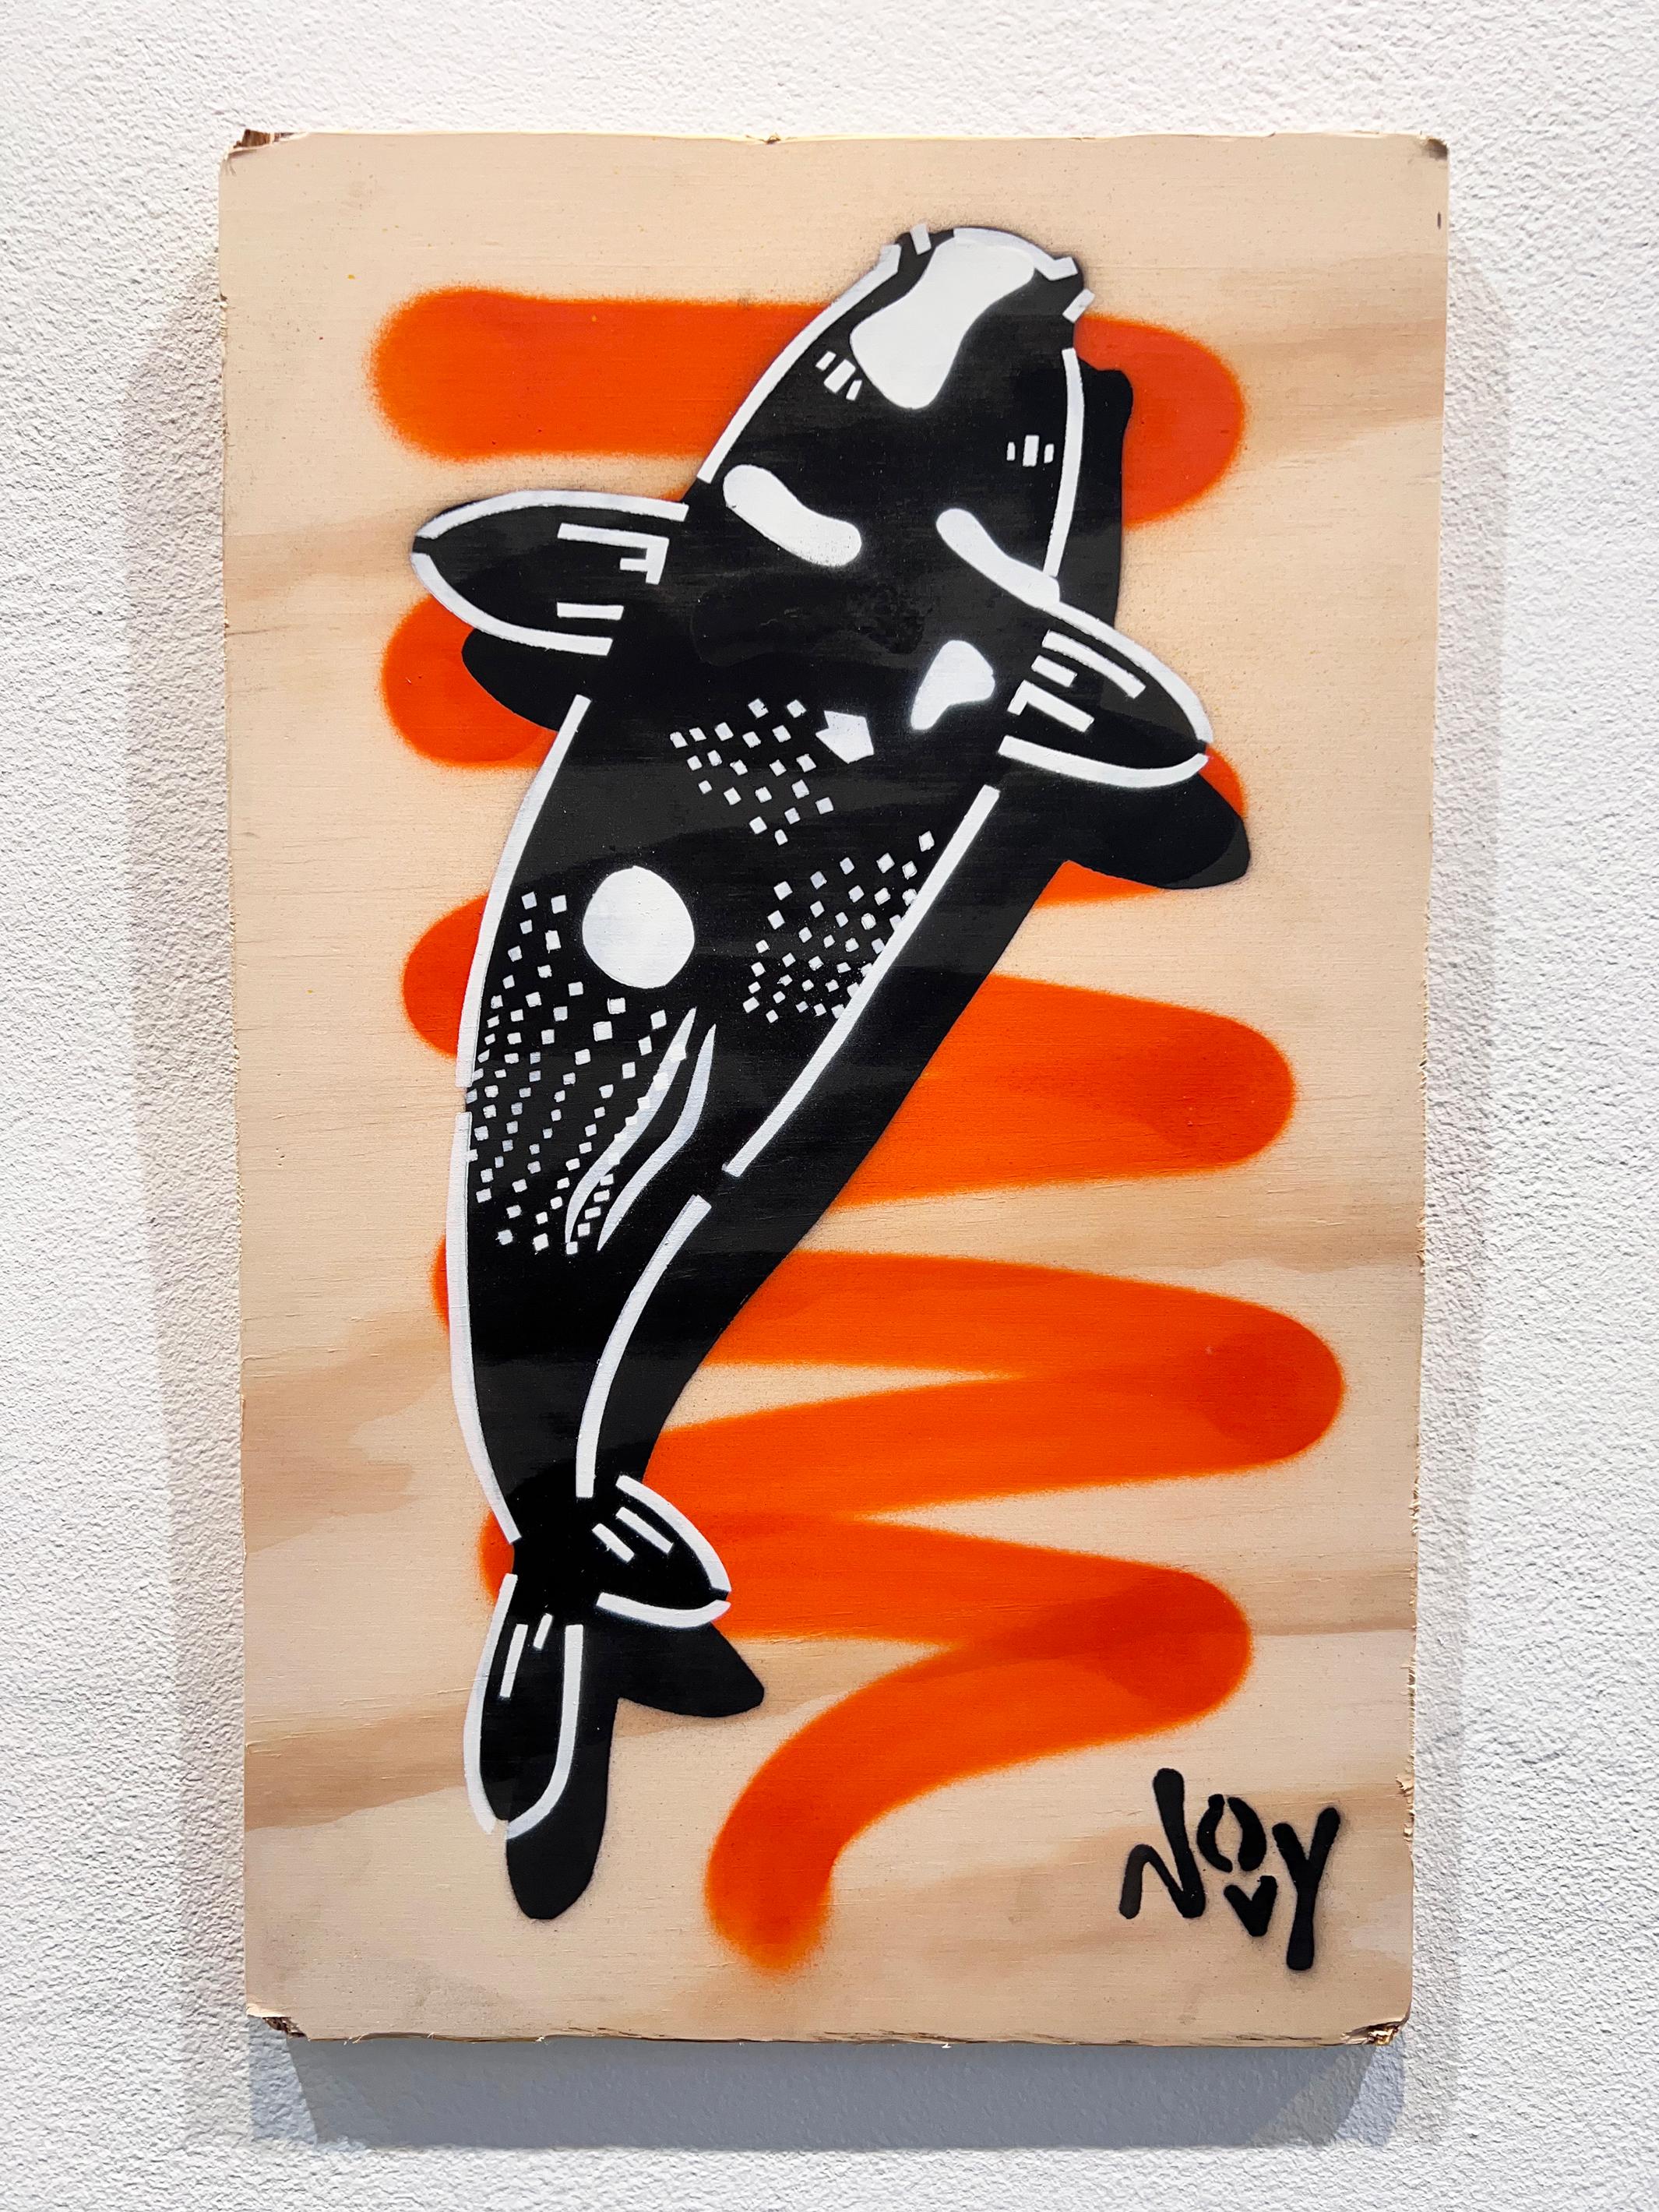 Prosperity 2 - Koi Orange Stencil Art - Painting by Jeremy Novy